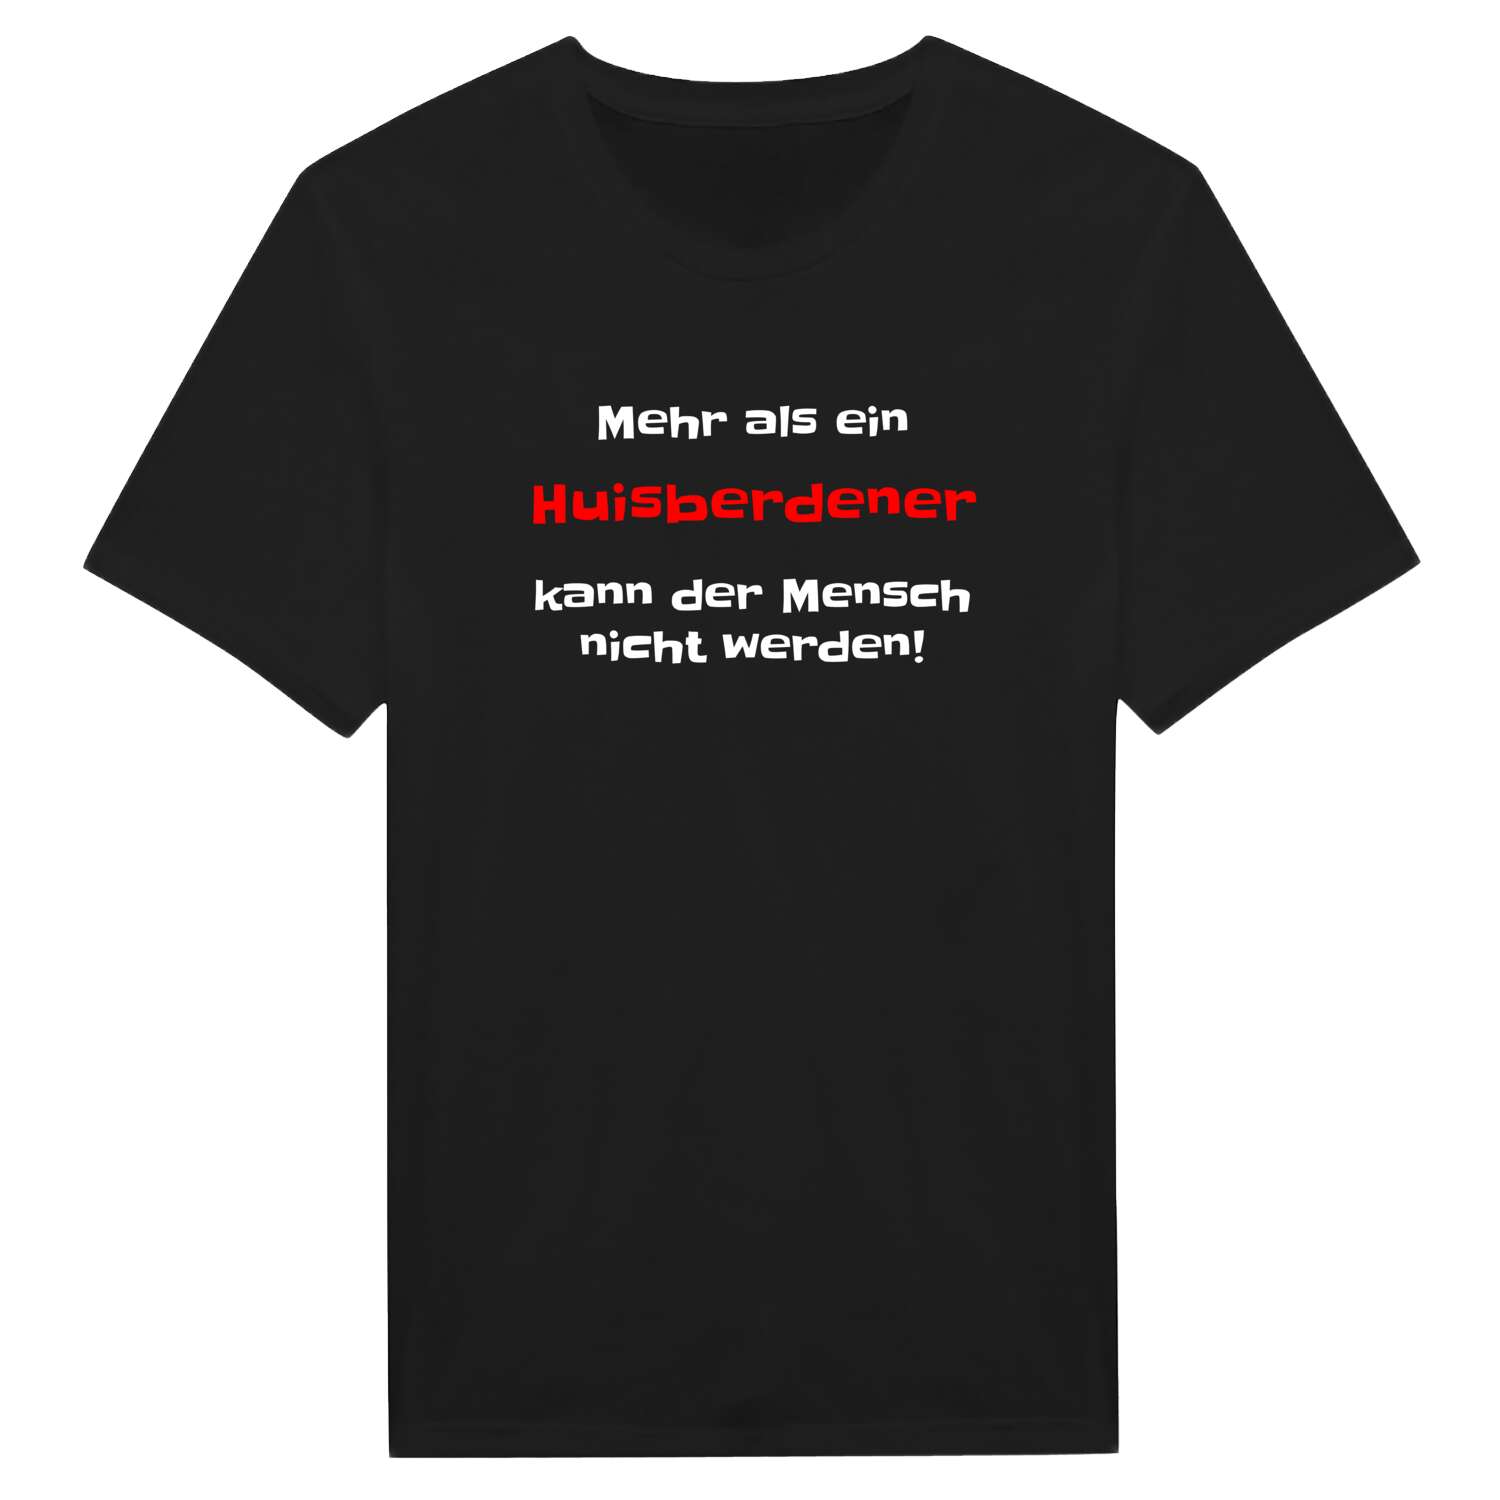 Huisberden T-Shirt »Mehr als ein«